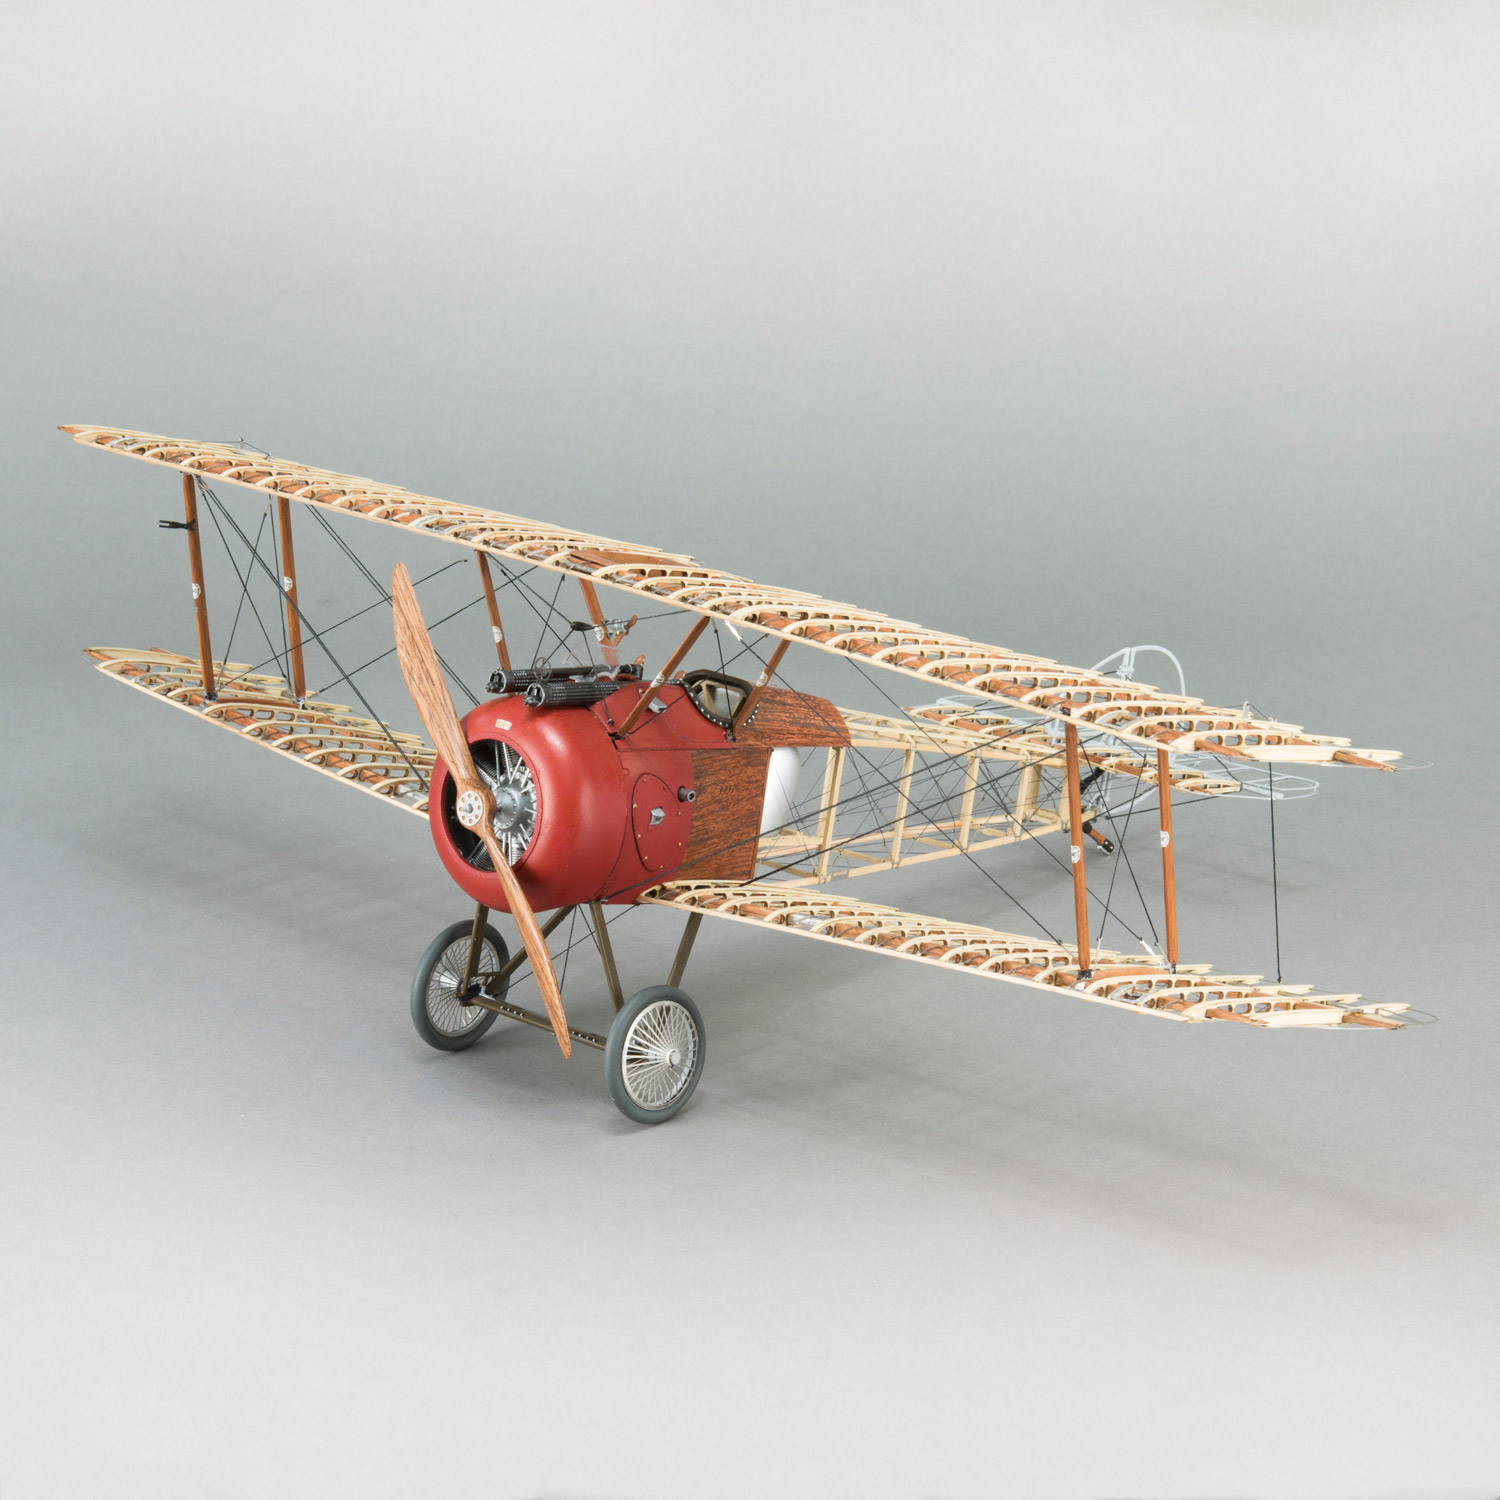 Maquette d'avion en bois Aviation Sans Frontières à assembler soi